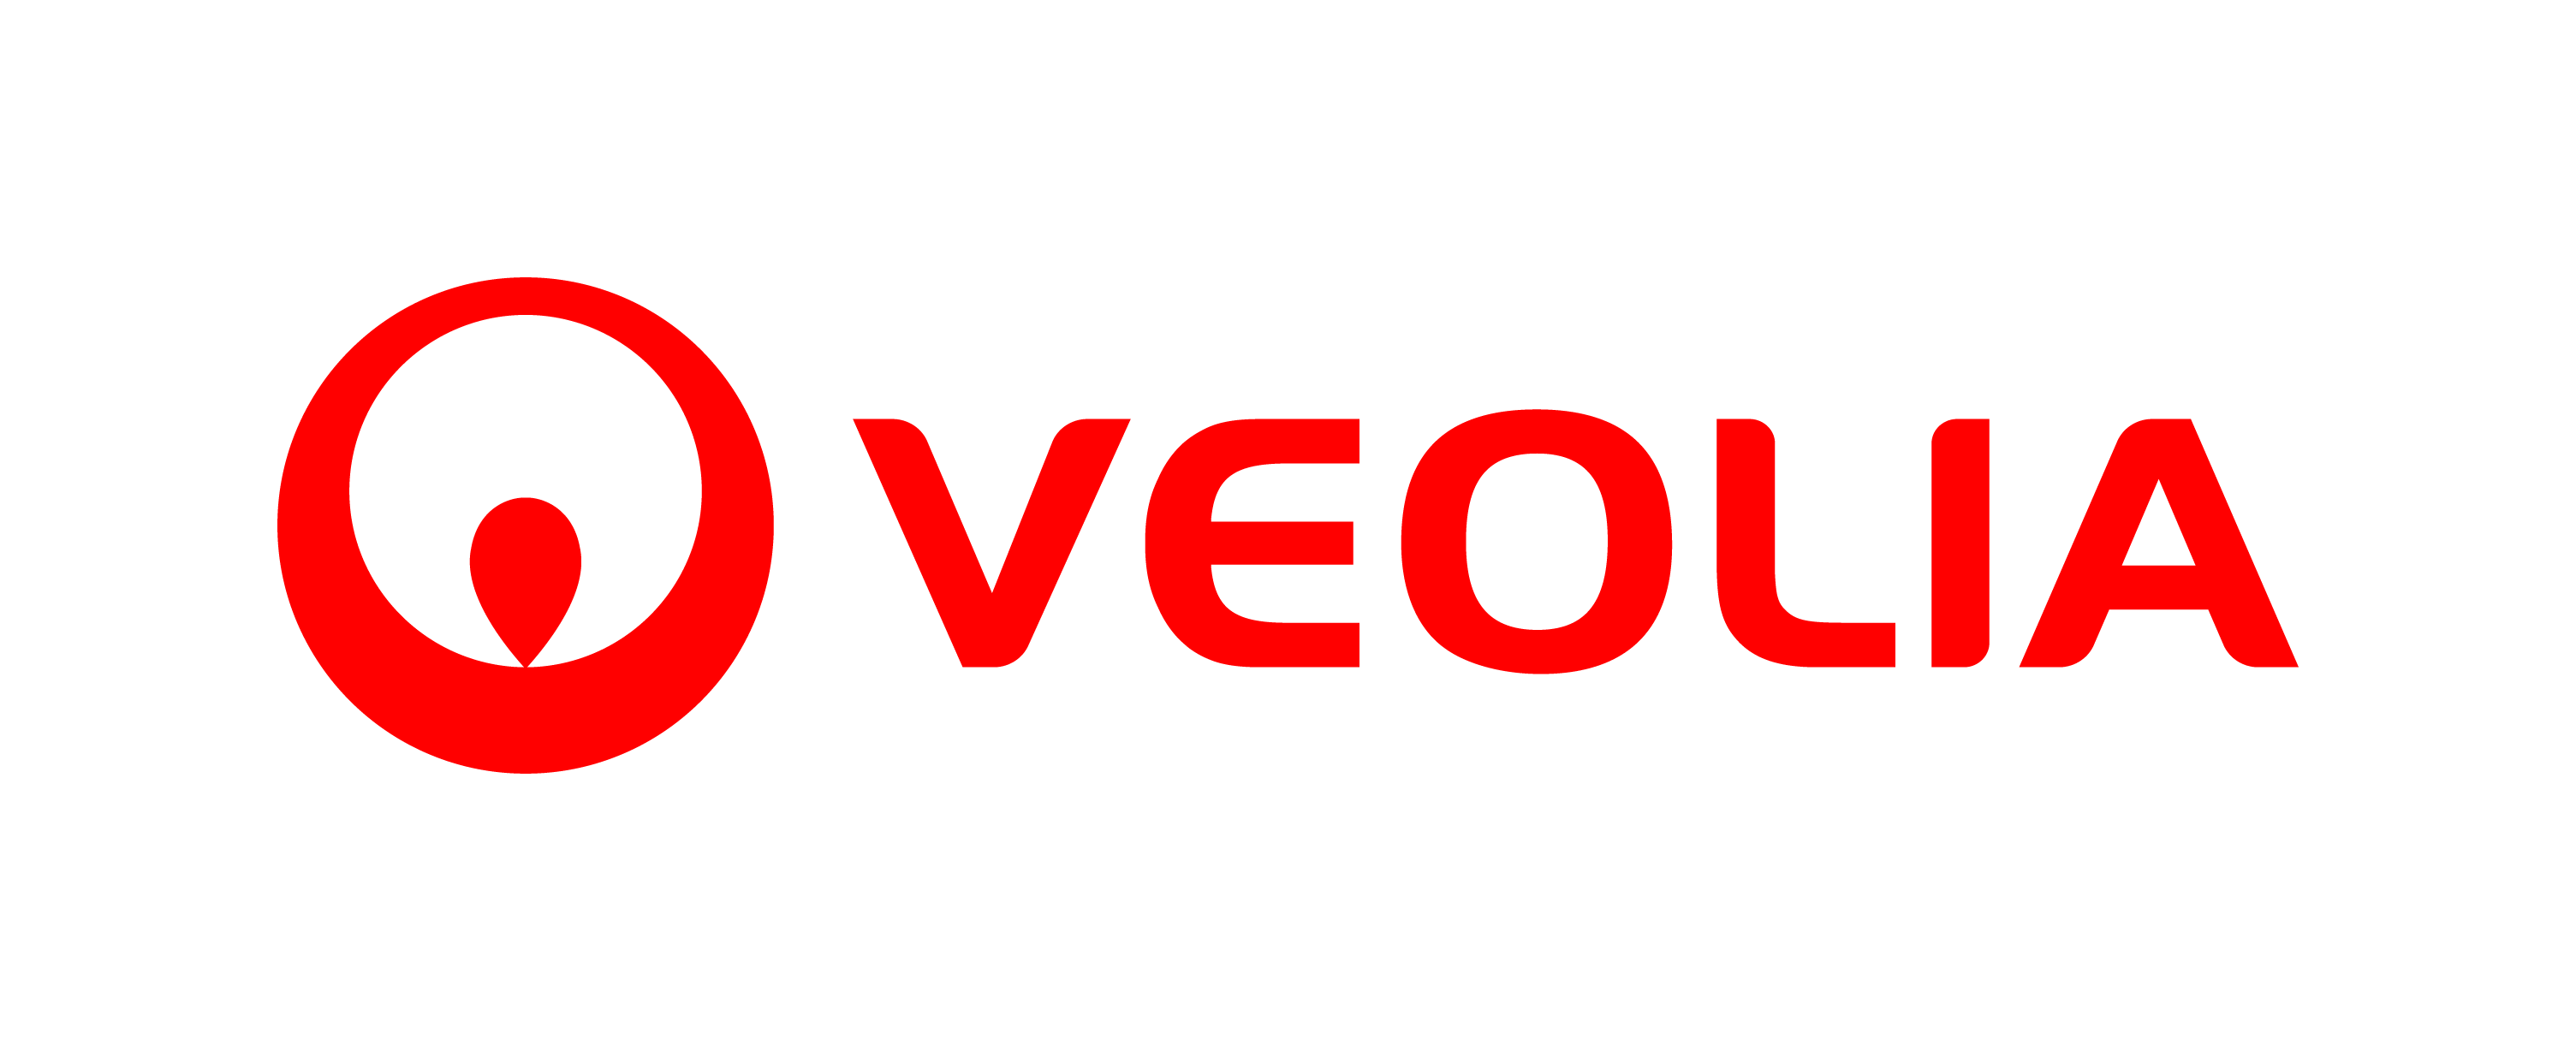 veolia_logo.png